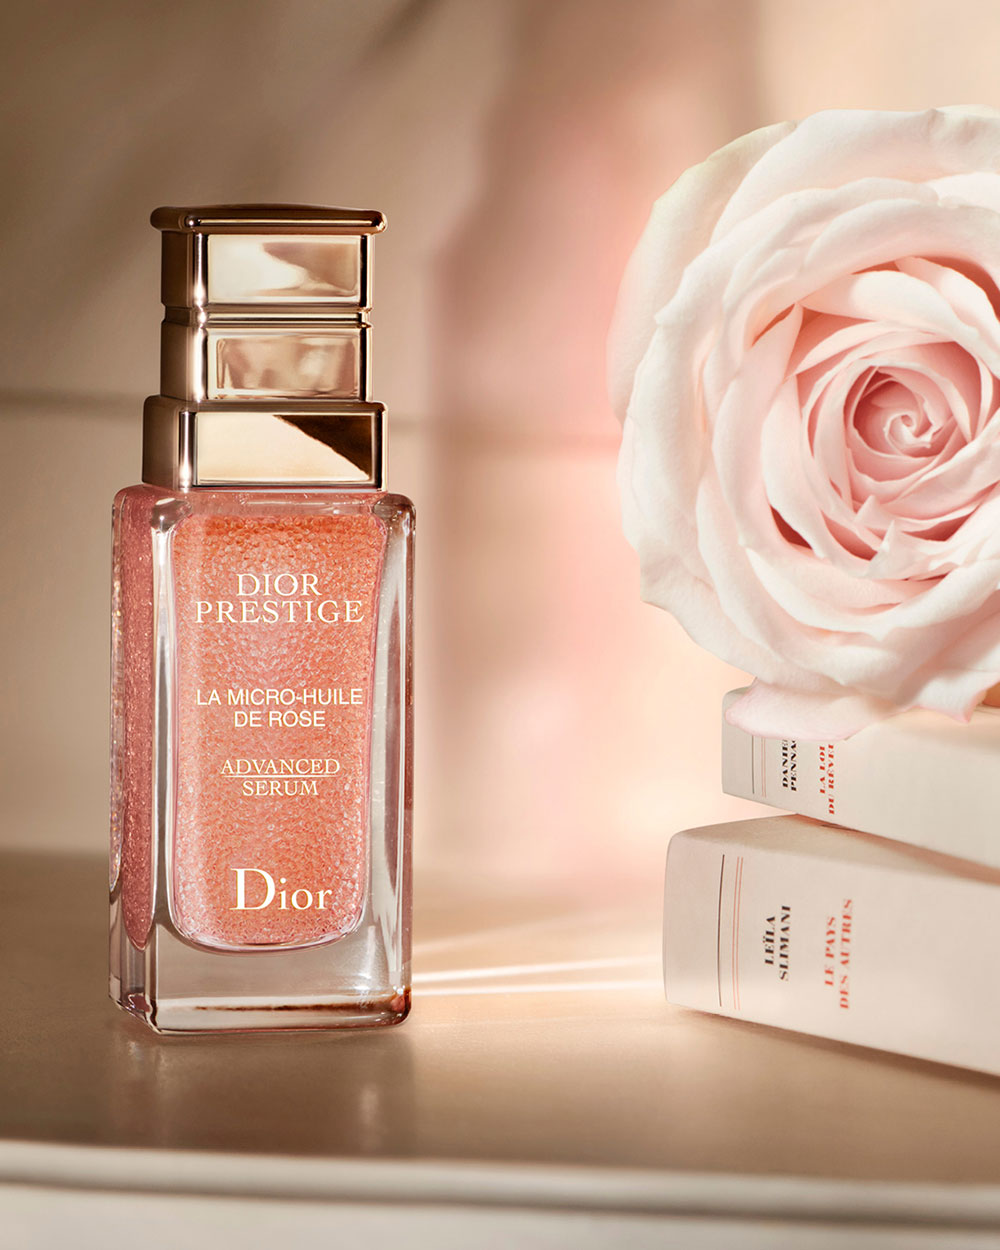 Dior Prestige La Micro-Huile de Rose Advanced Serum.